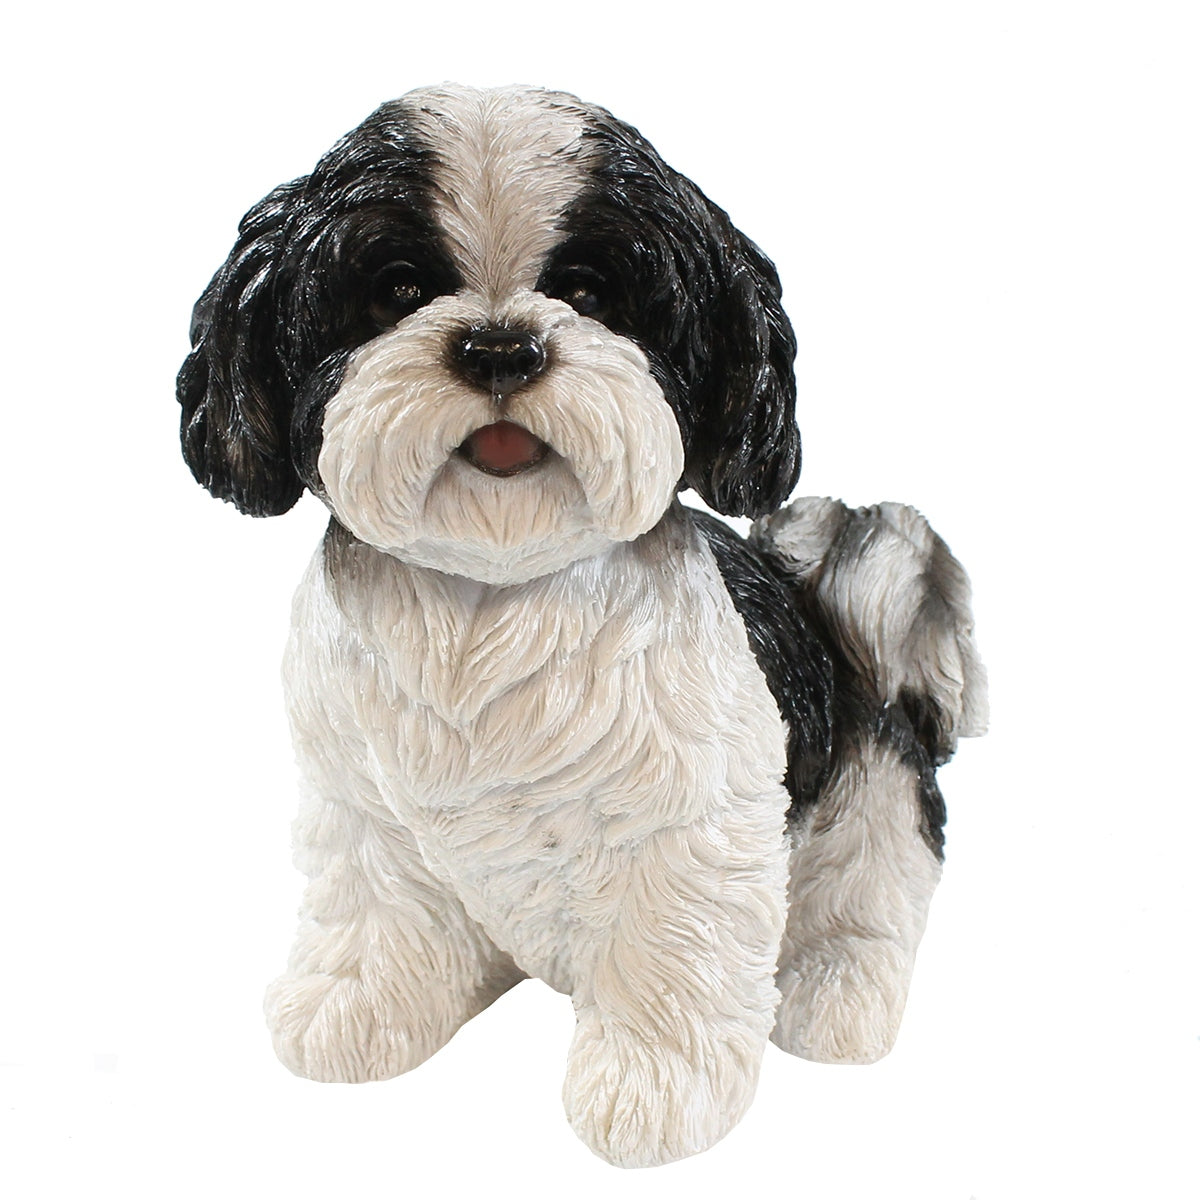 colourliving Hunde Figur Shih Tzu Welpe sitzend weiß-schwarz Hund Tierfigur Hundefigur